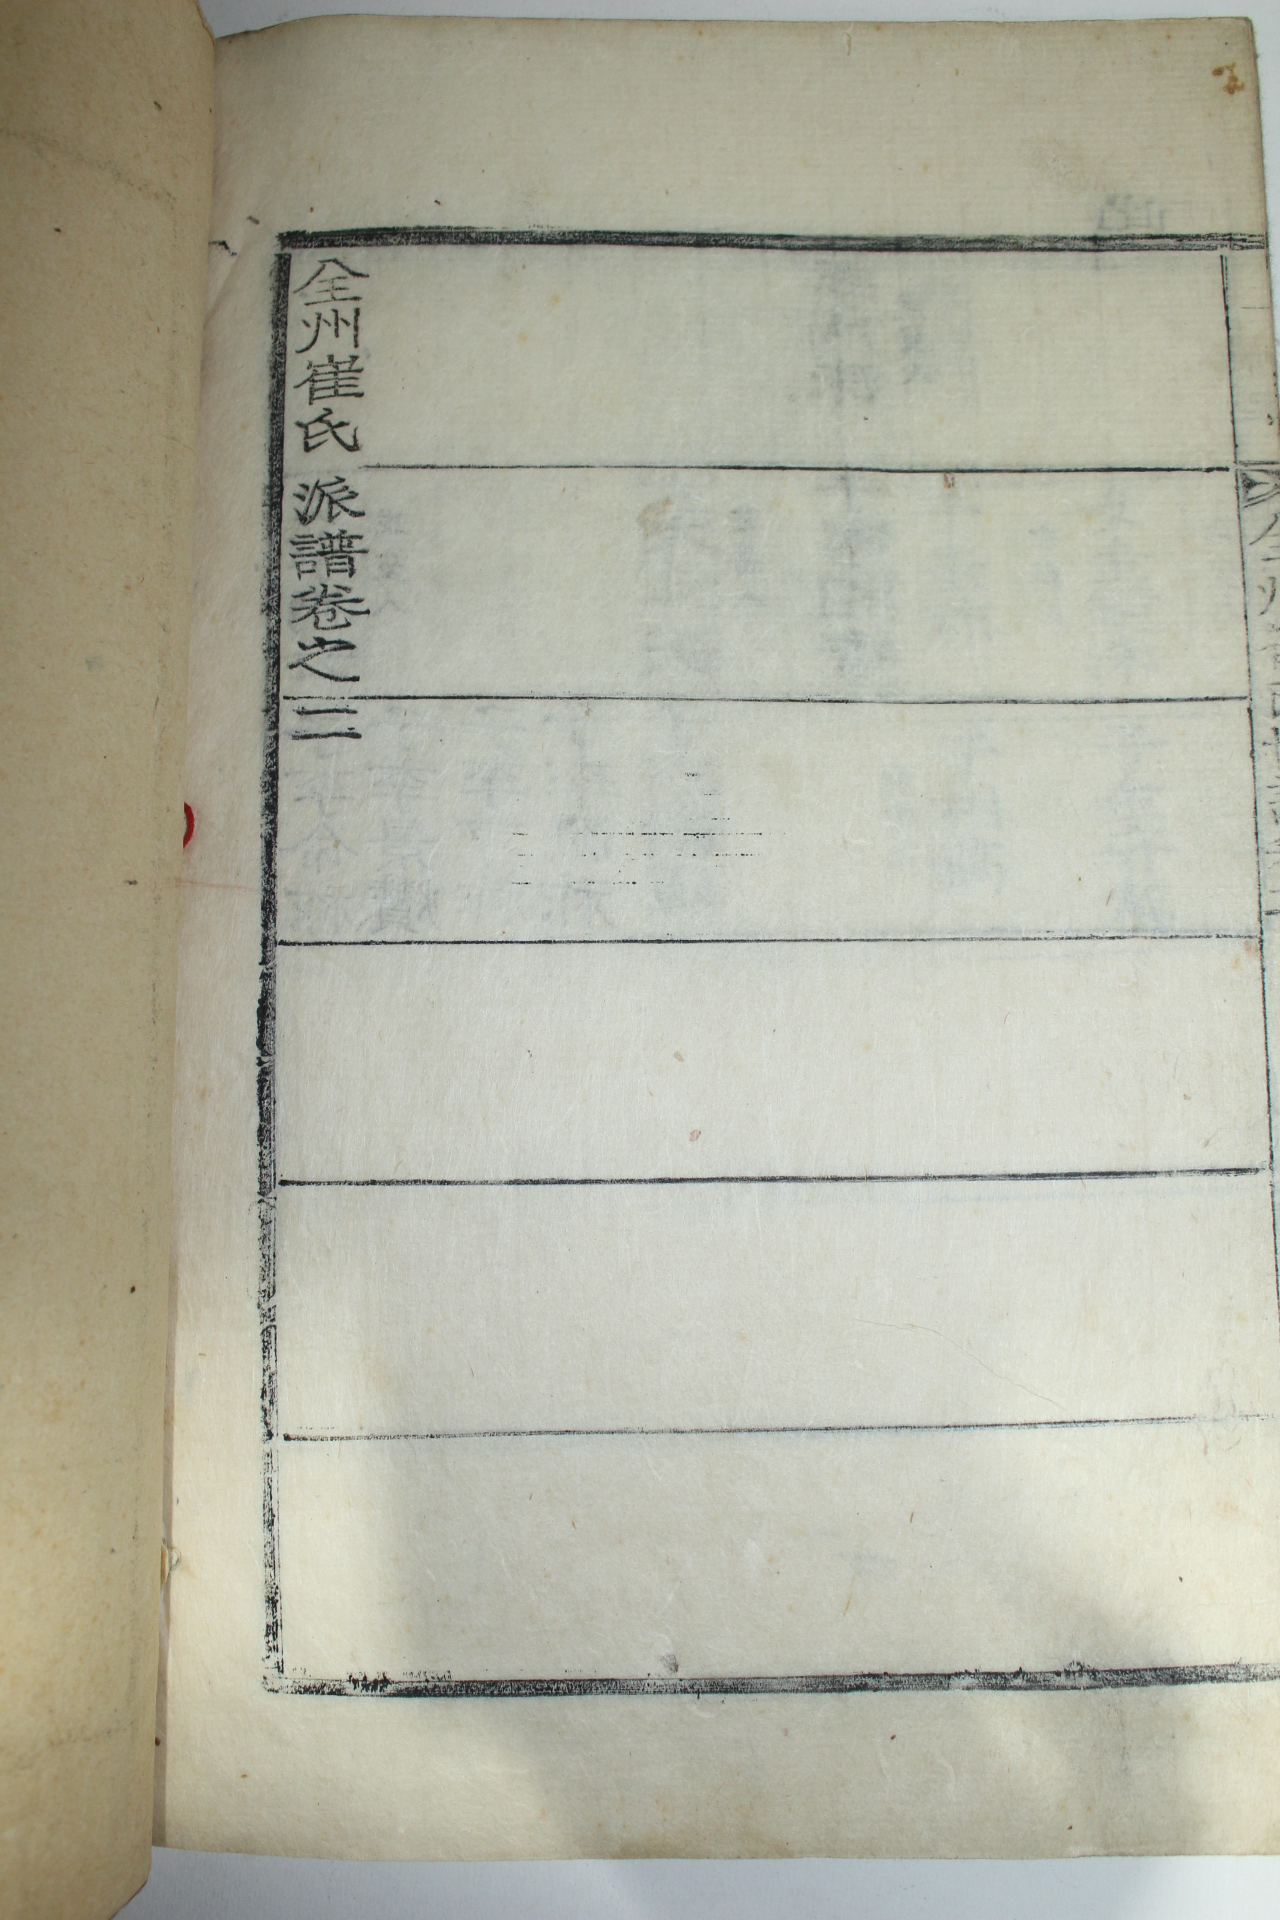 1935년(소화10년) 경남고성간행 목활자본 전주최씨파보(全州崔氏派譜) 2권2책완질